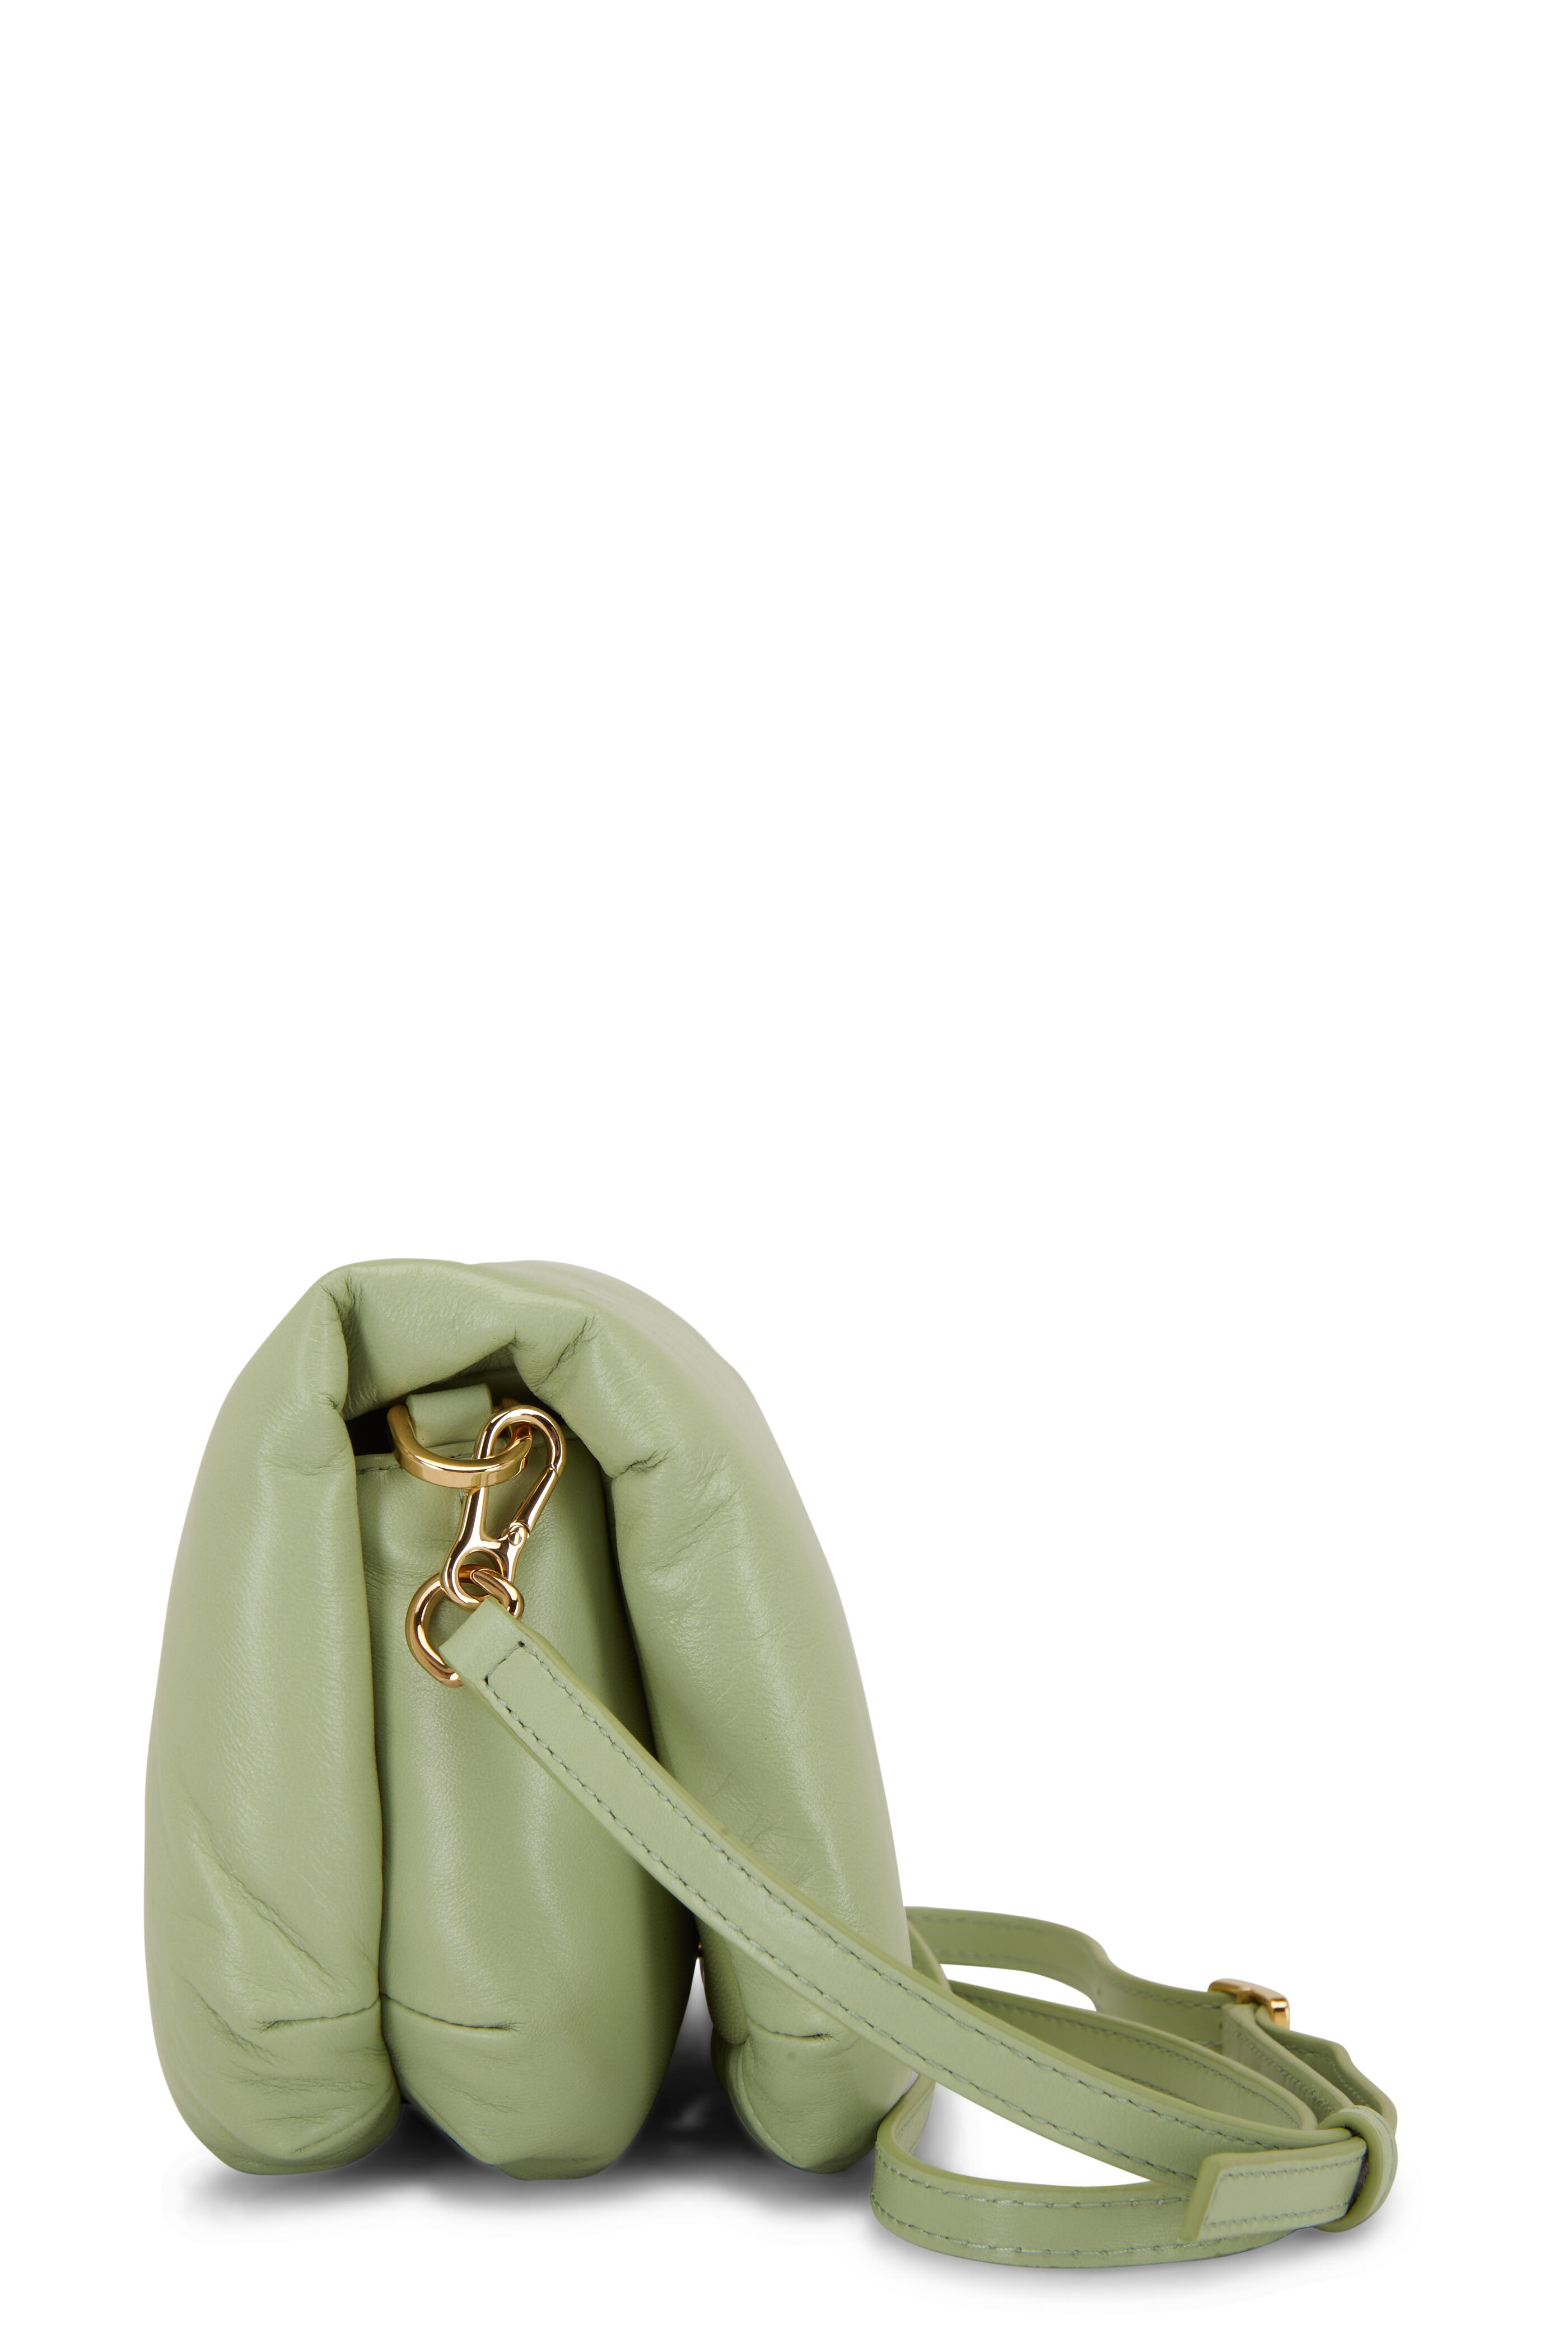 Goya Puffer Mini Shoulder Bag in Green - Loewe